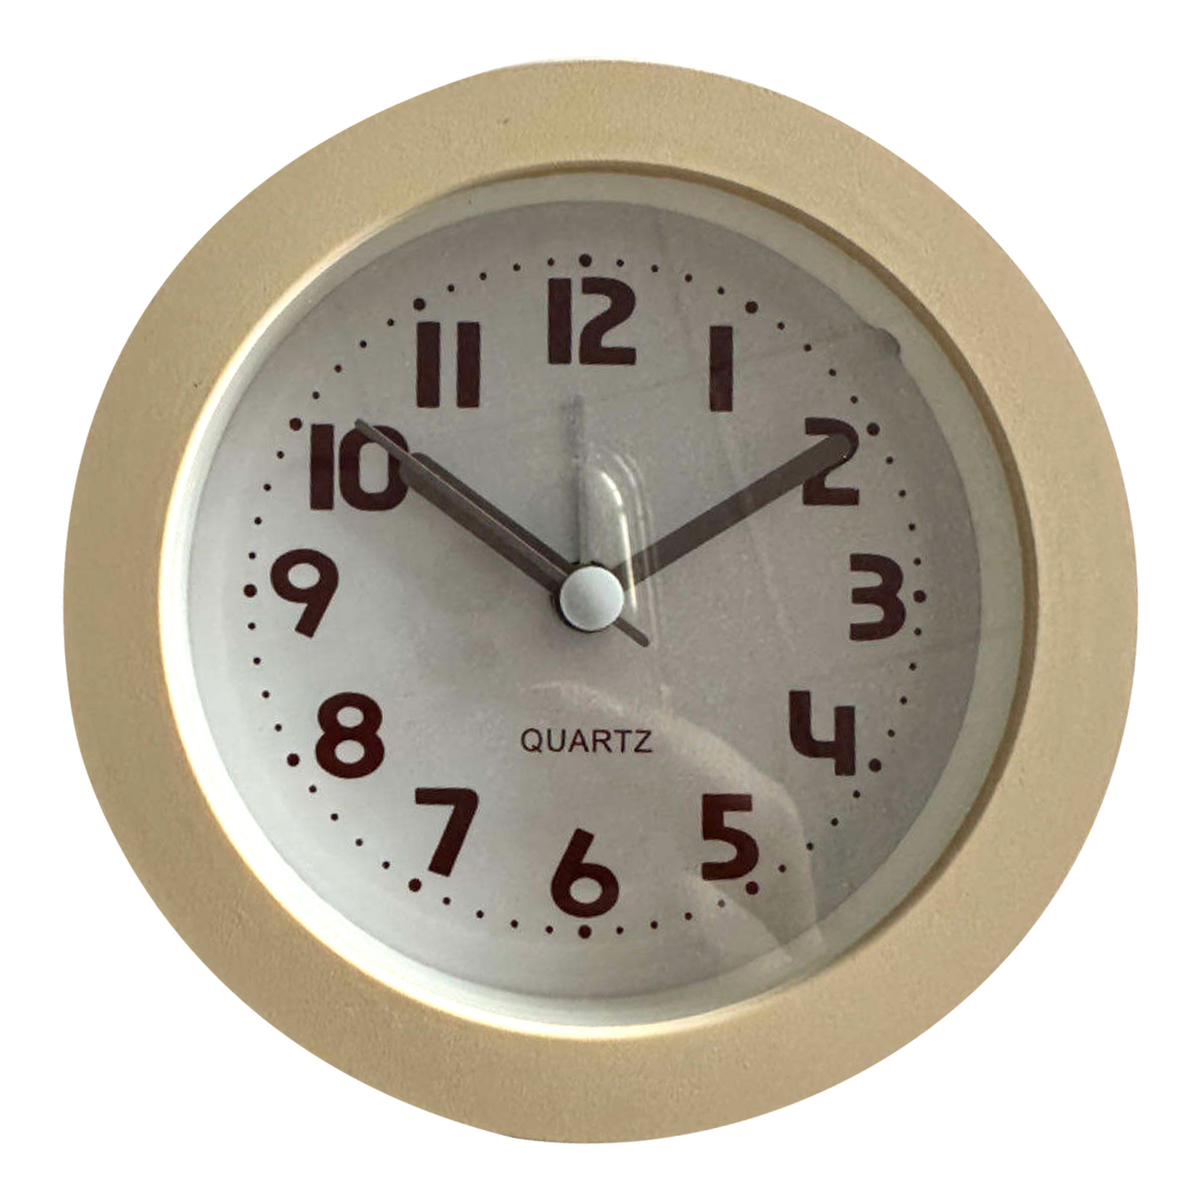 مابل ليف هوم ساعة منبه بلاستيكية للطاولة، بيج، BP-T05C